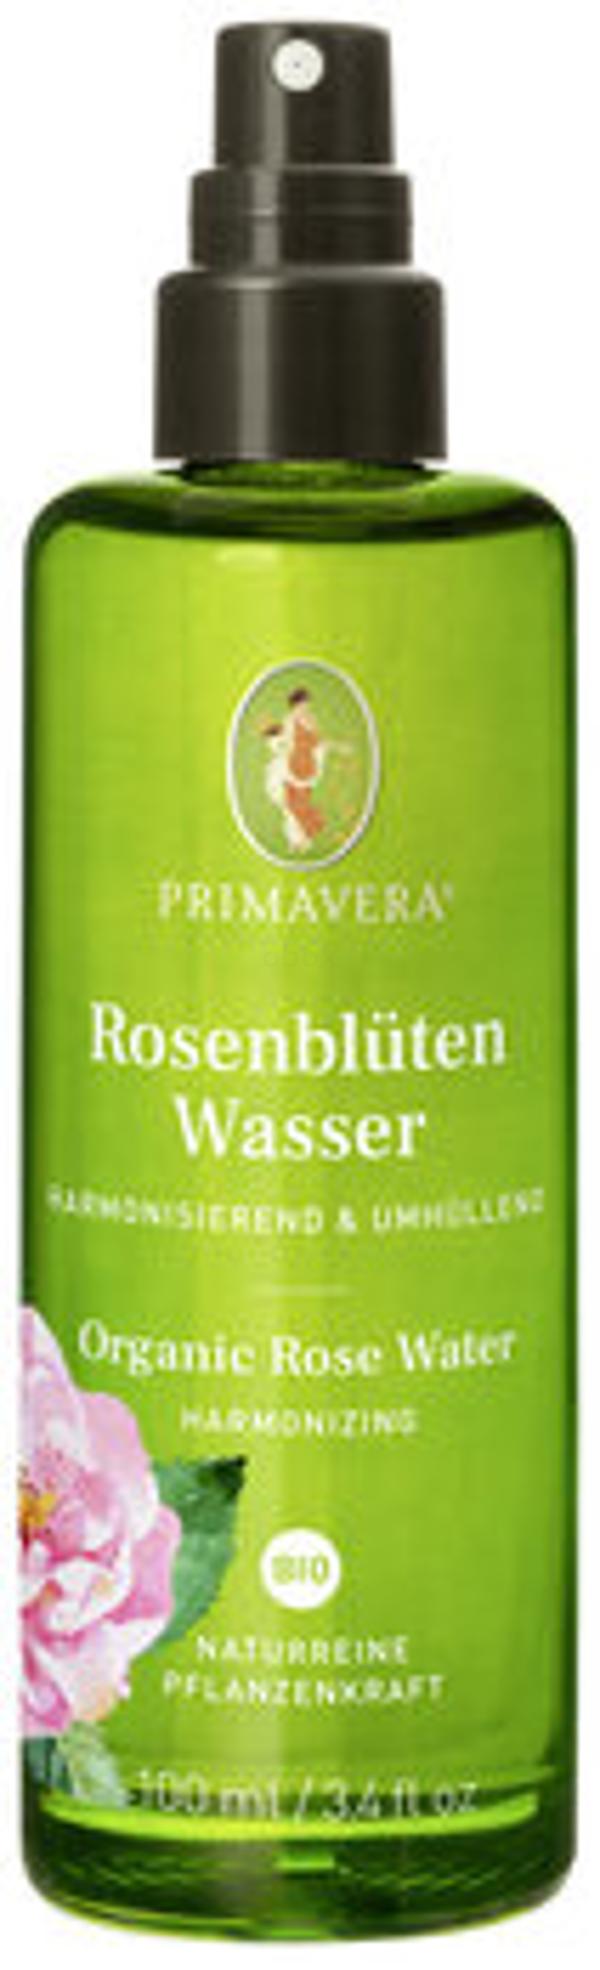 Produktfoto zu Rosenwasser